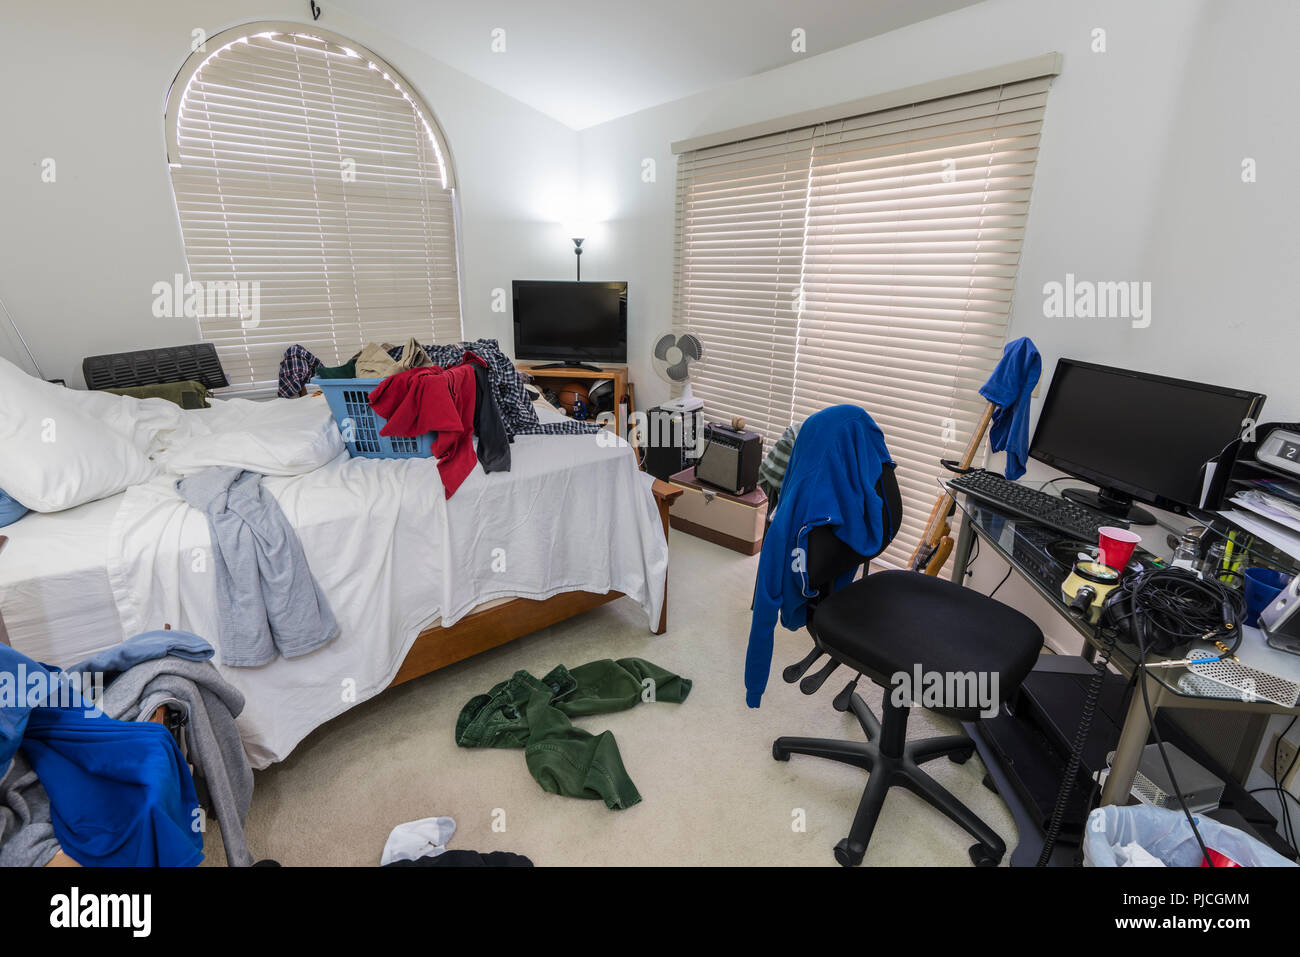 Überladen, unordentlichen Jungen im Teenageralter Schlafzimmer mit Stapel von Kleidung, Musik und Sportgeräte. Stockfoto